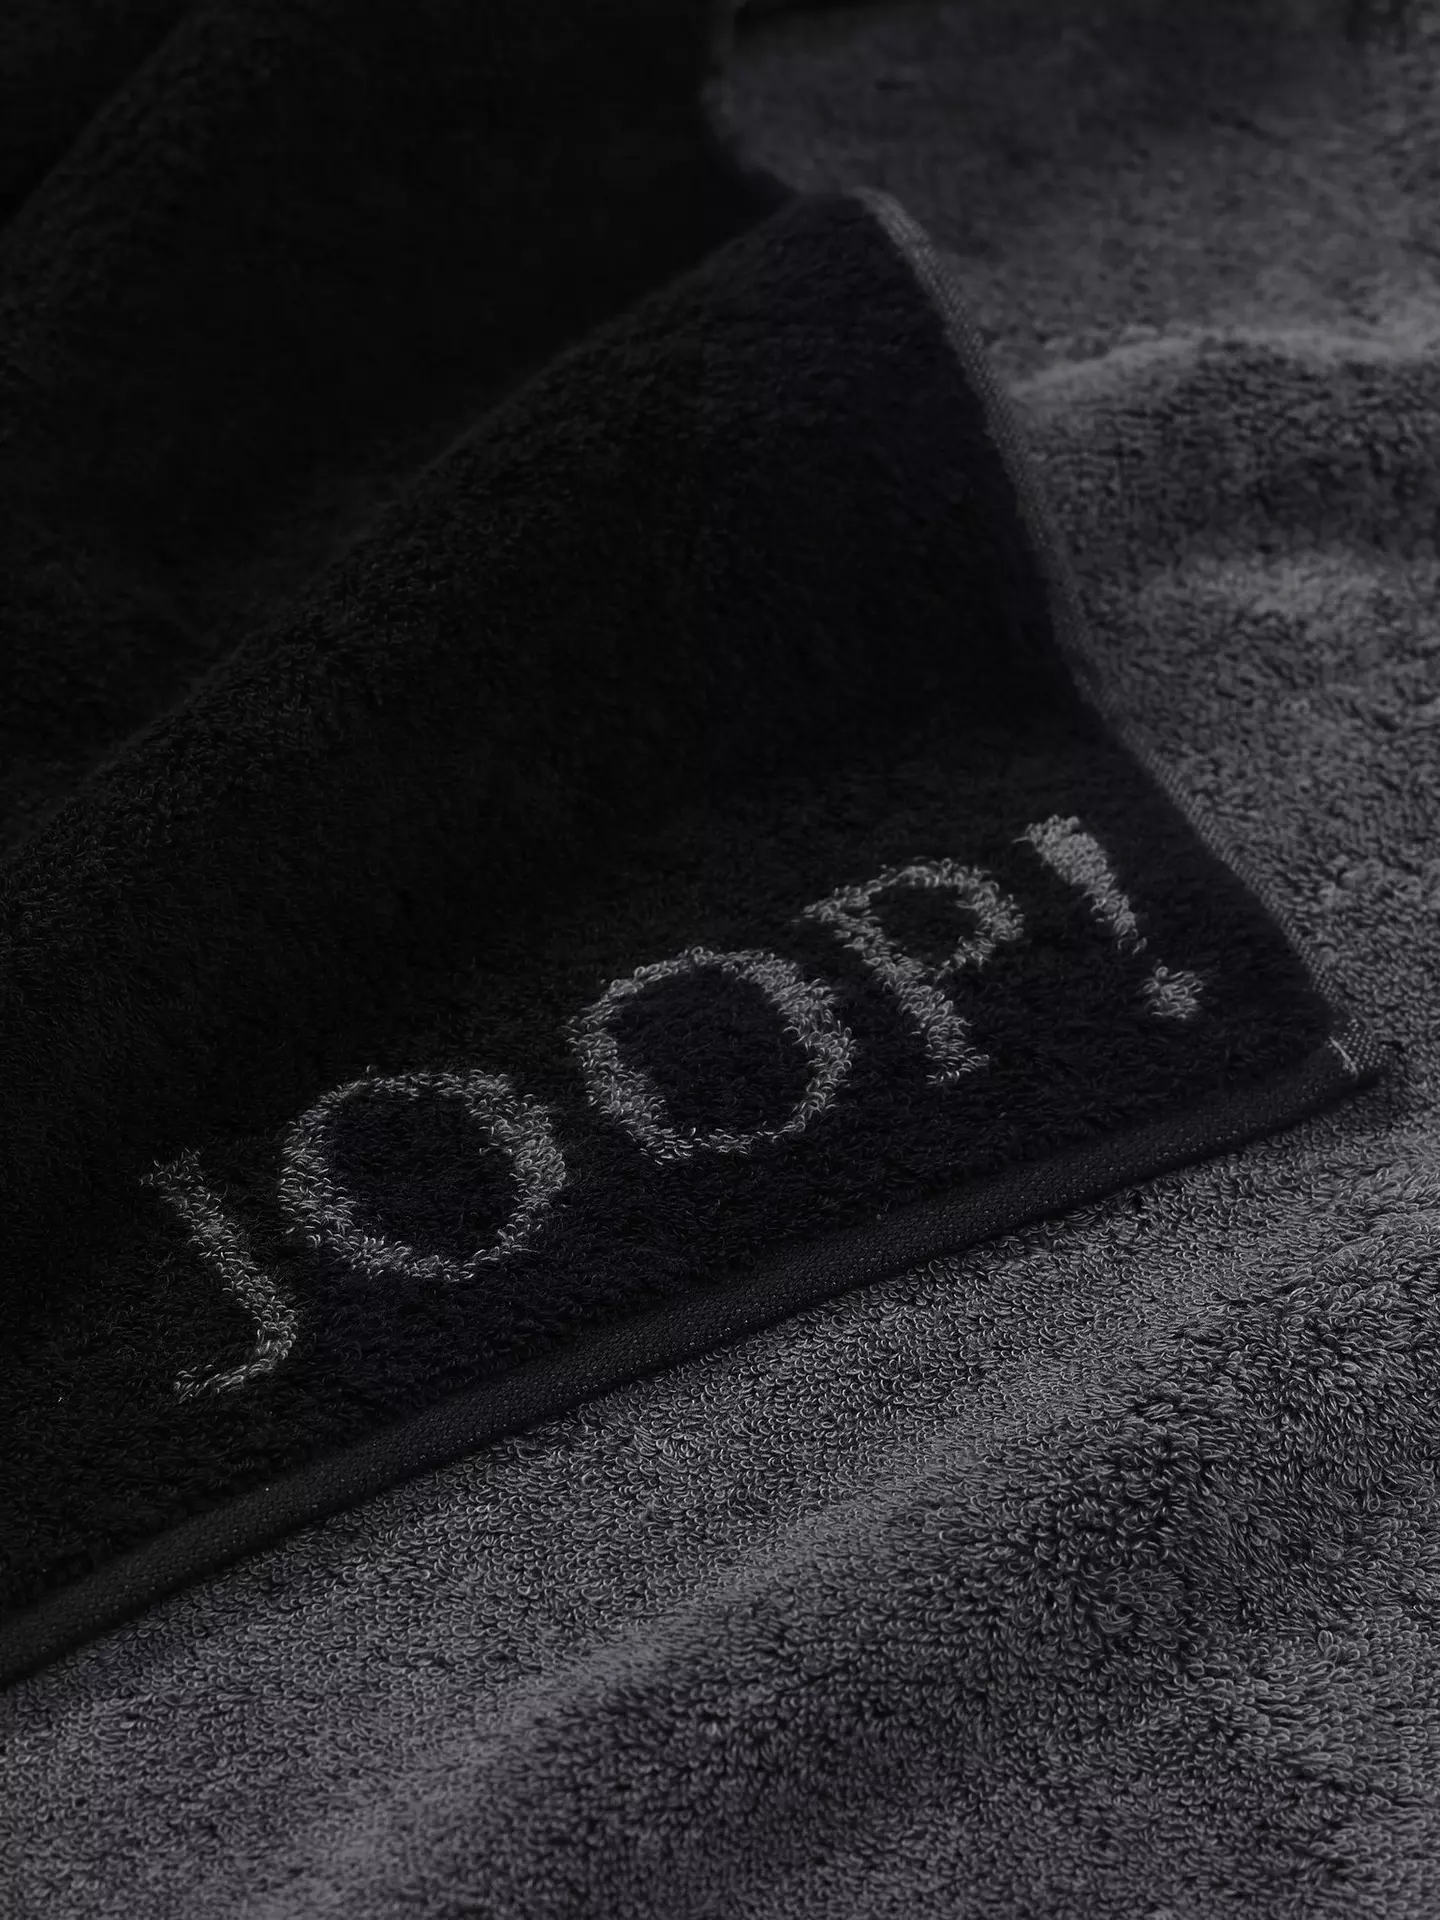 Handtuch Doubleface JOOP Textil 50 x 100 cm